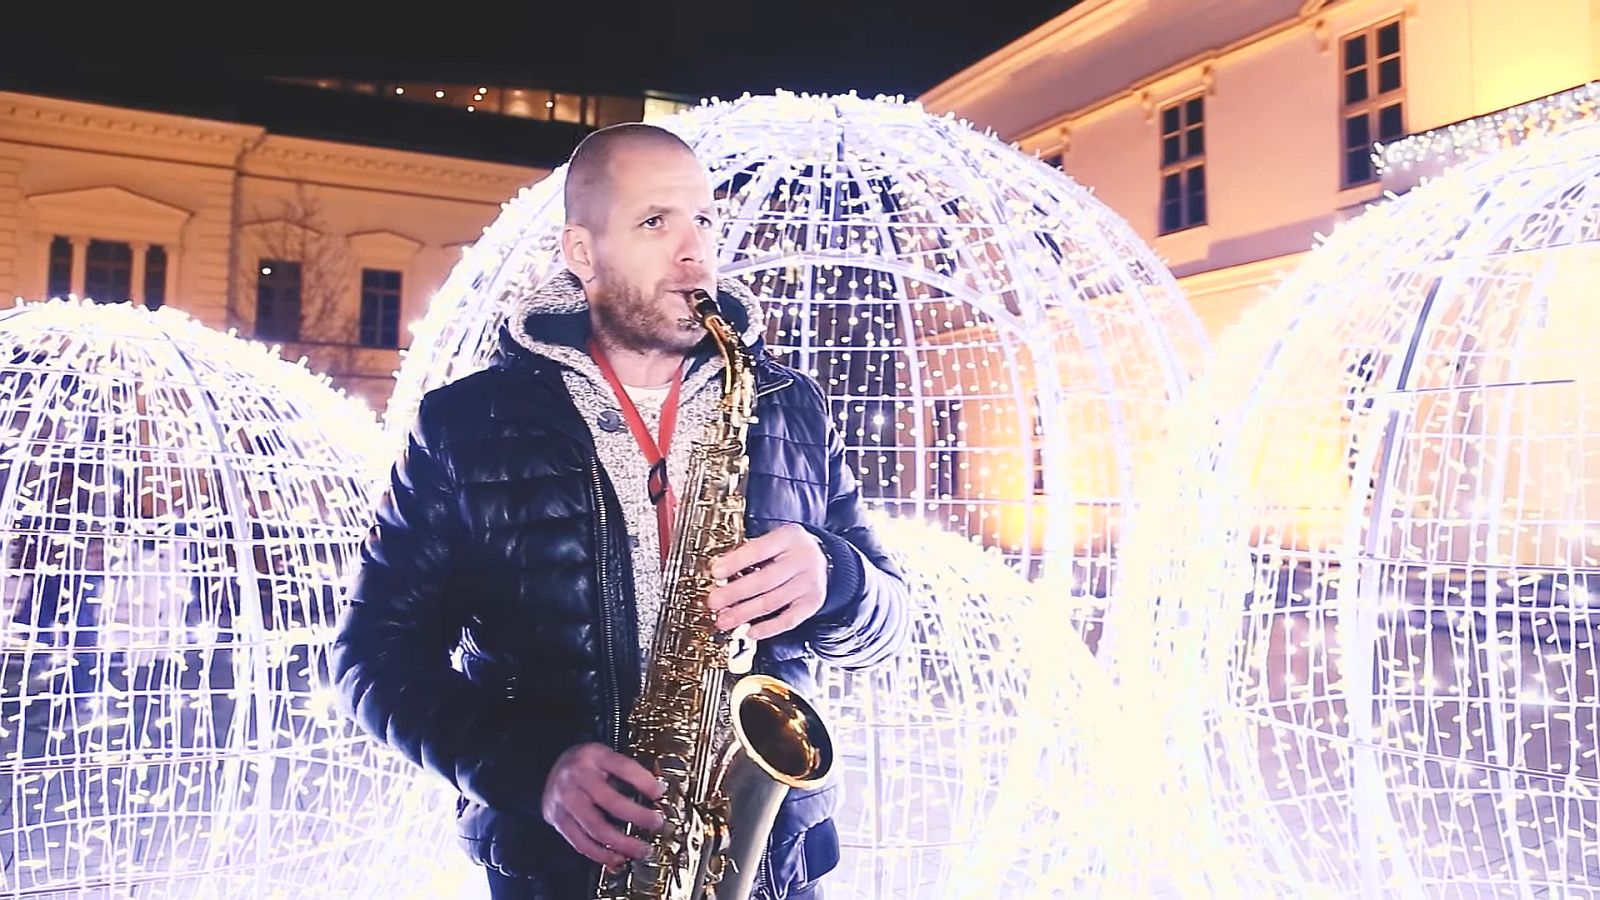 Mits Karácsony - ünnepi jazz-dallamok Székesfehérvárról